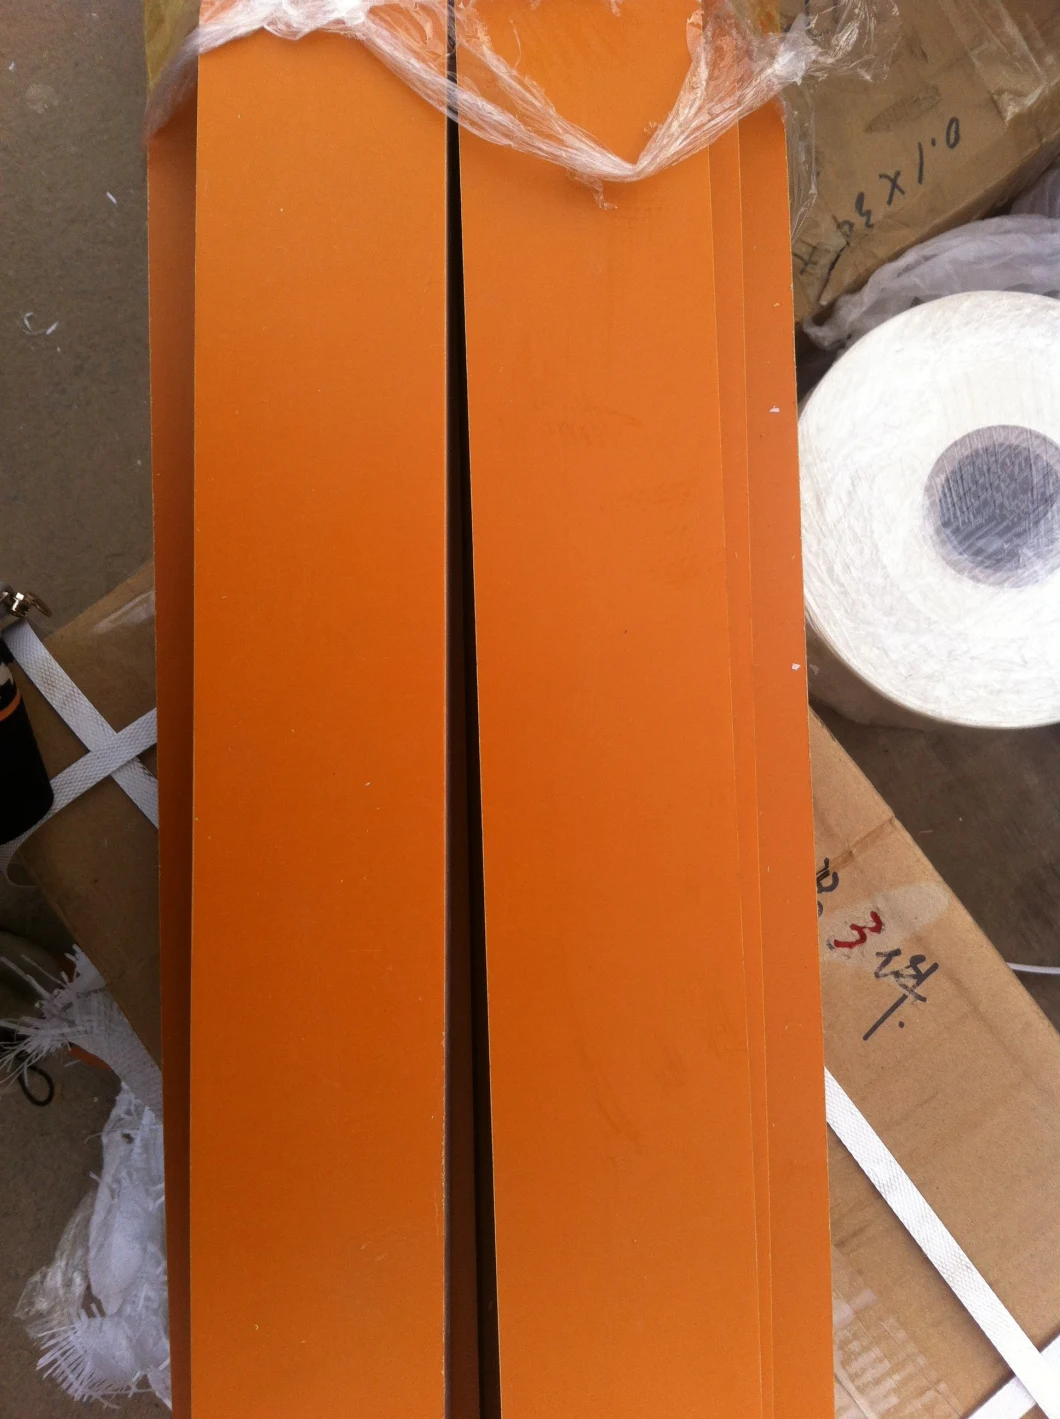 3021 Orange Electrical Insulation Board Phenolic Resin Paper Laminate Sheet